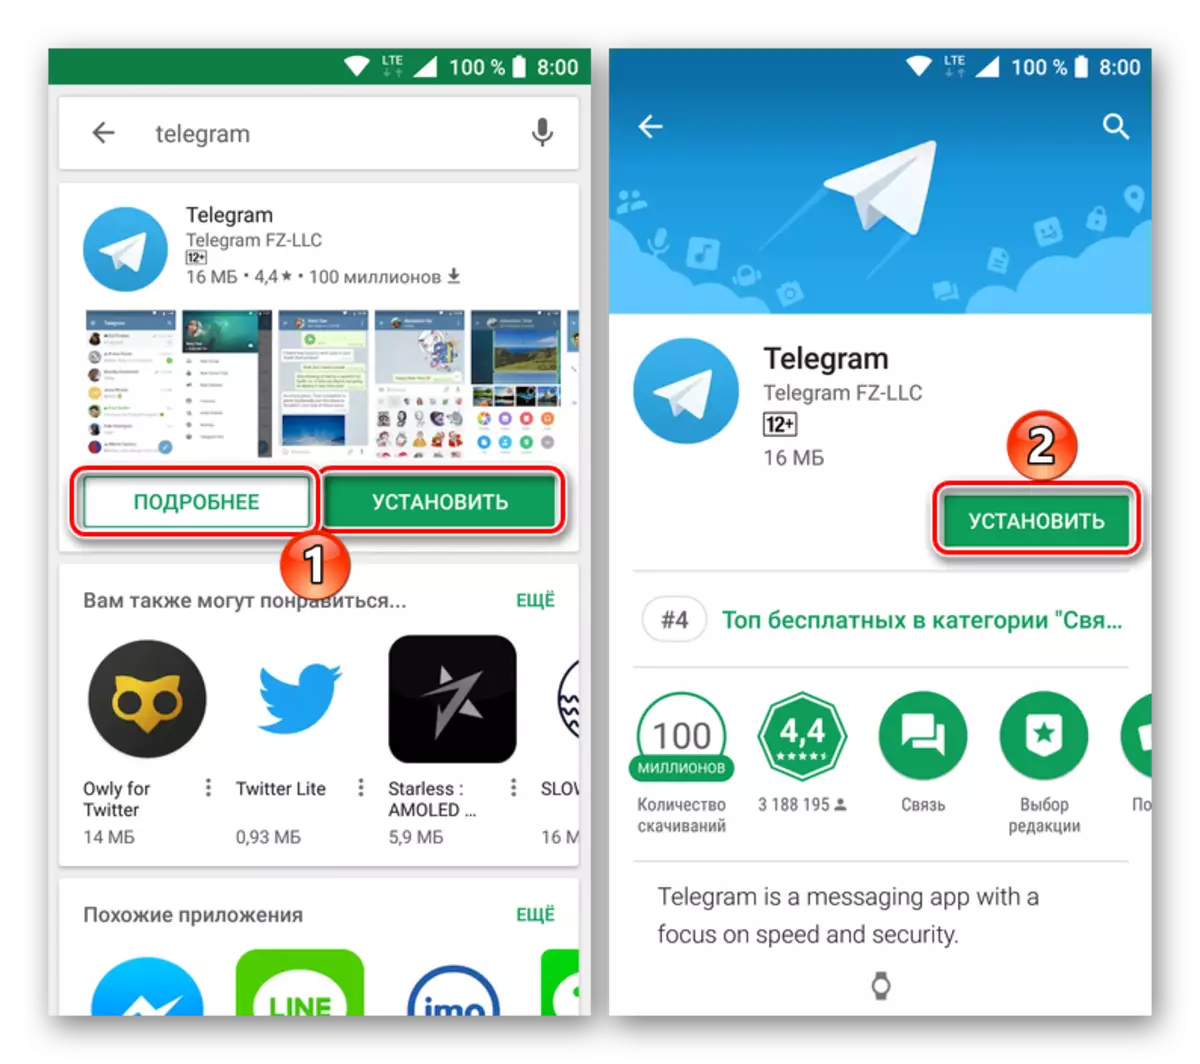 Android साठी Google Play टेलीग्राम ऍप्लिकेशन मार्केटमधून इंस्टॉलेशनवर जा